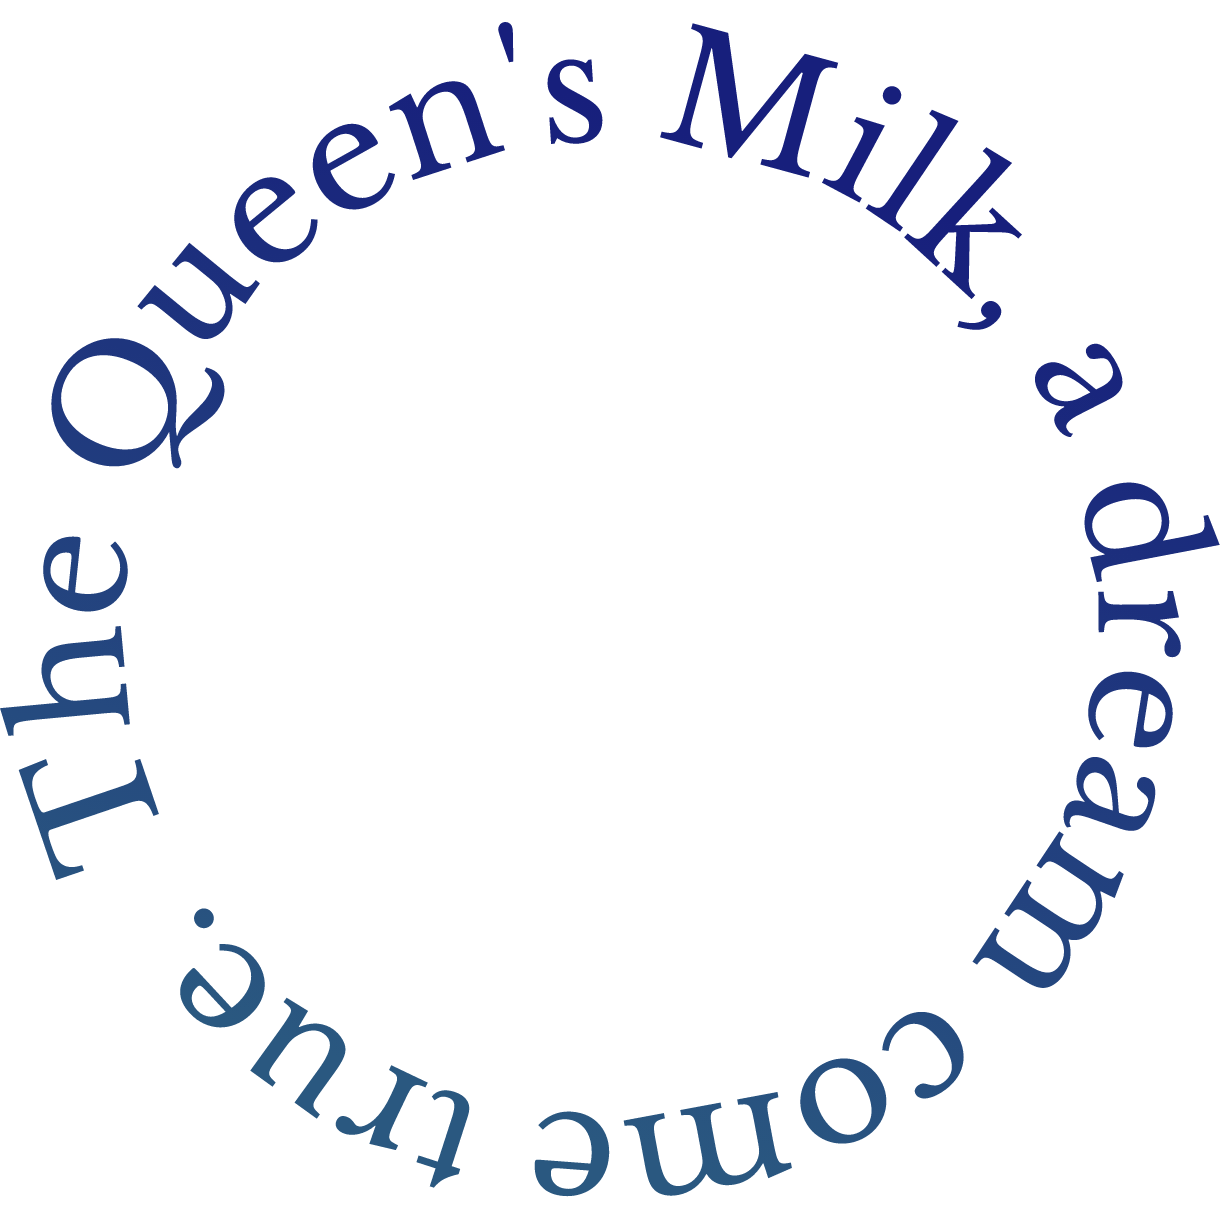 The Queen’s Milk, a dream come true.